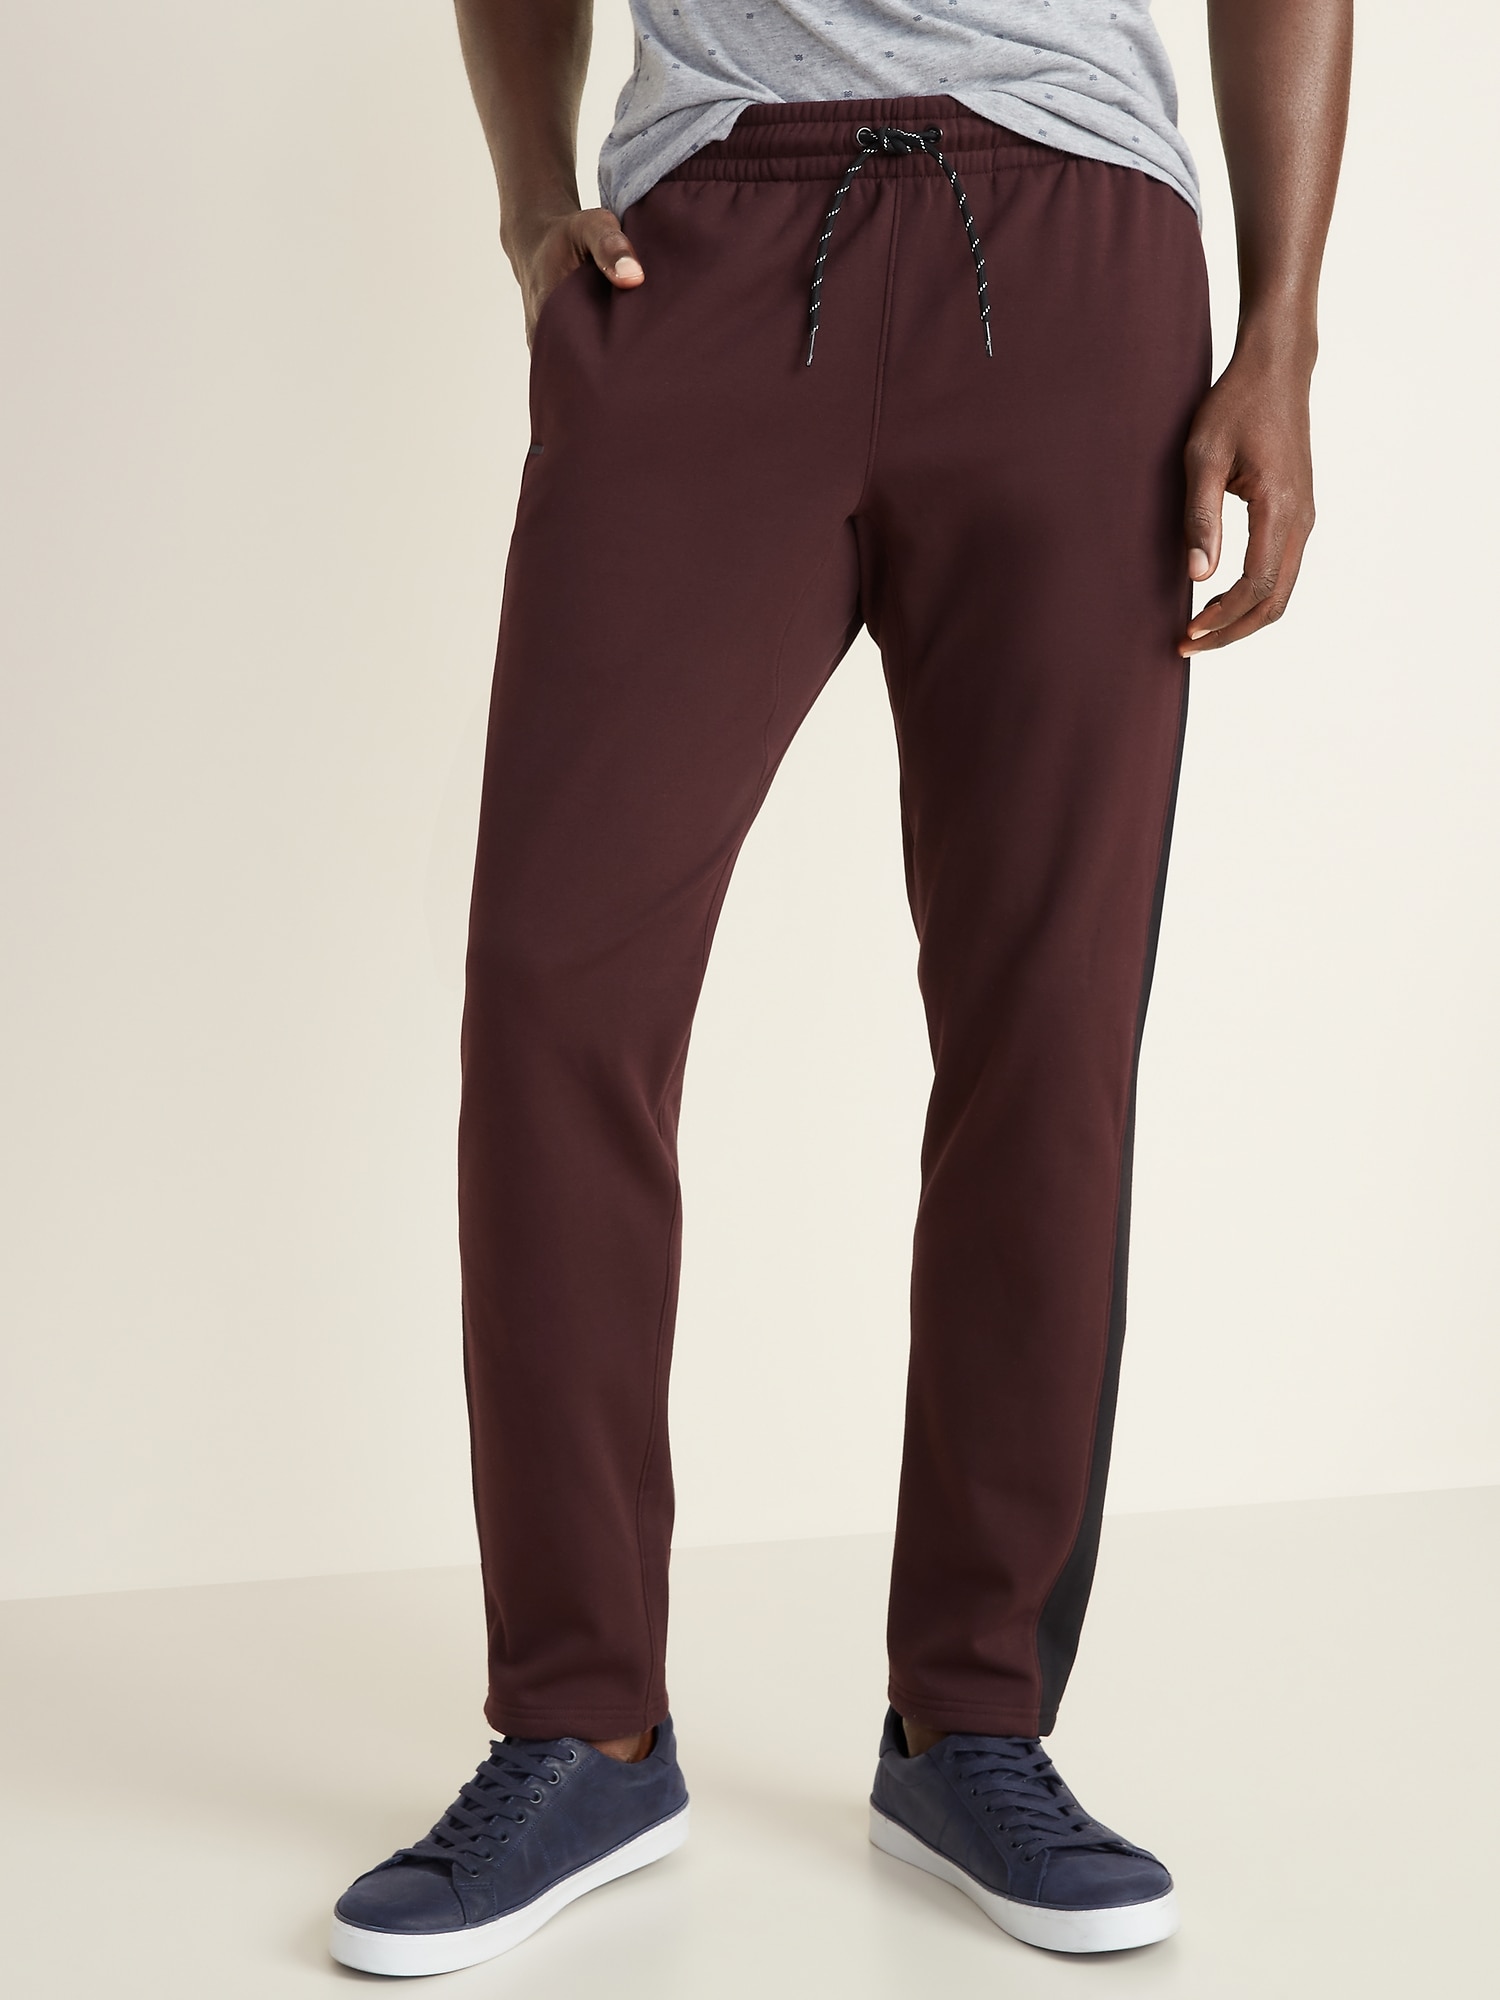 Go-Warm Dynamic Fleece Pants for Men